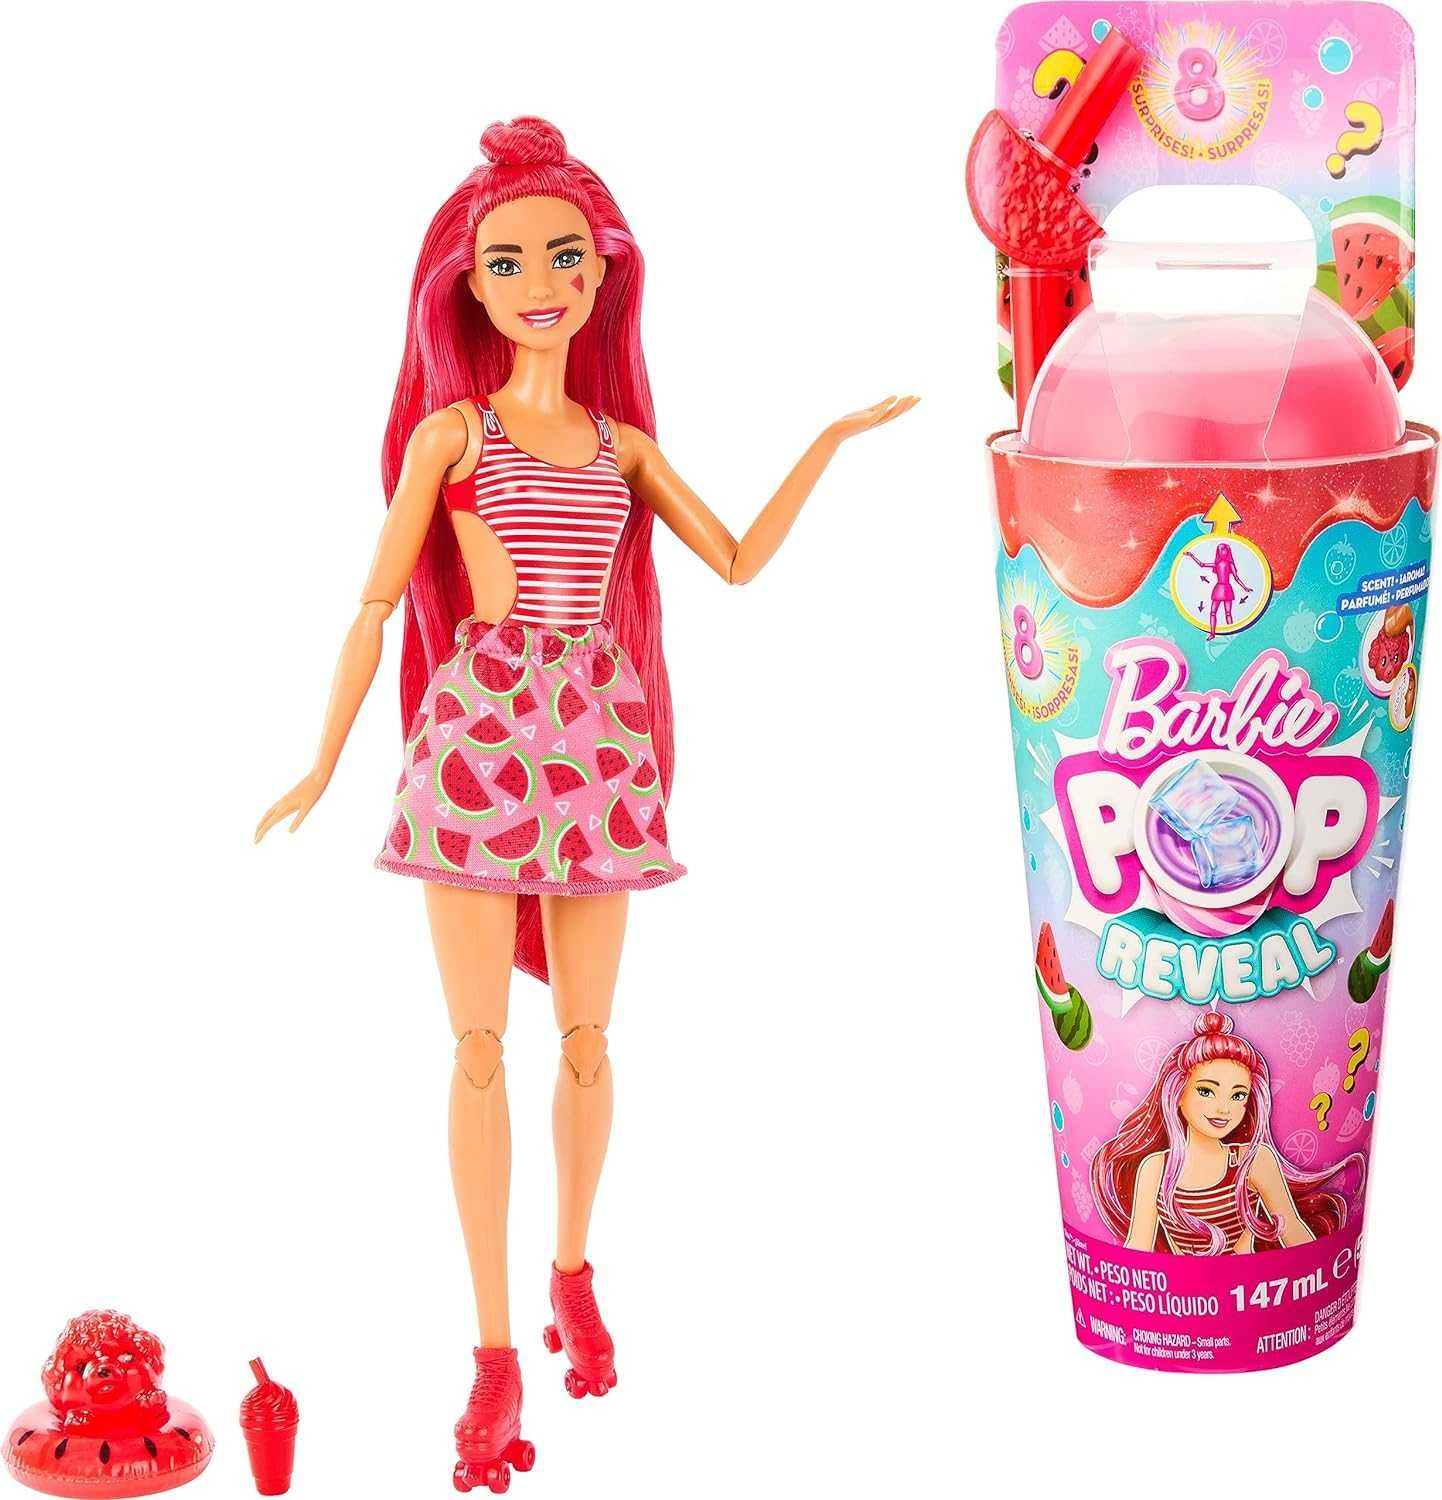 Лялька Barbie op Reveal Fruit. Соковиті фрукти Кавунне смузі